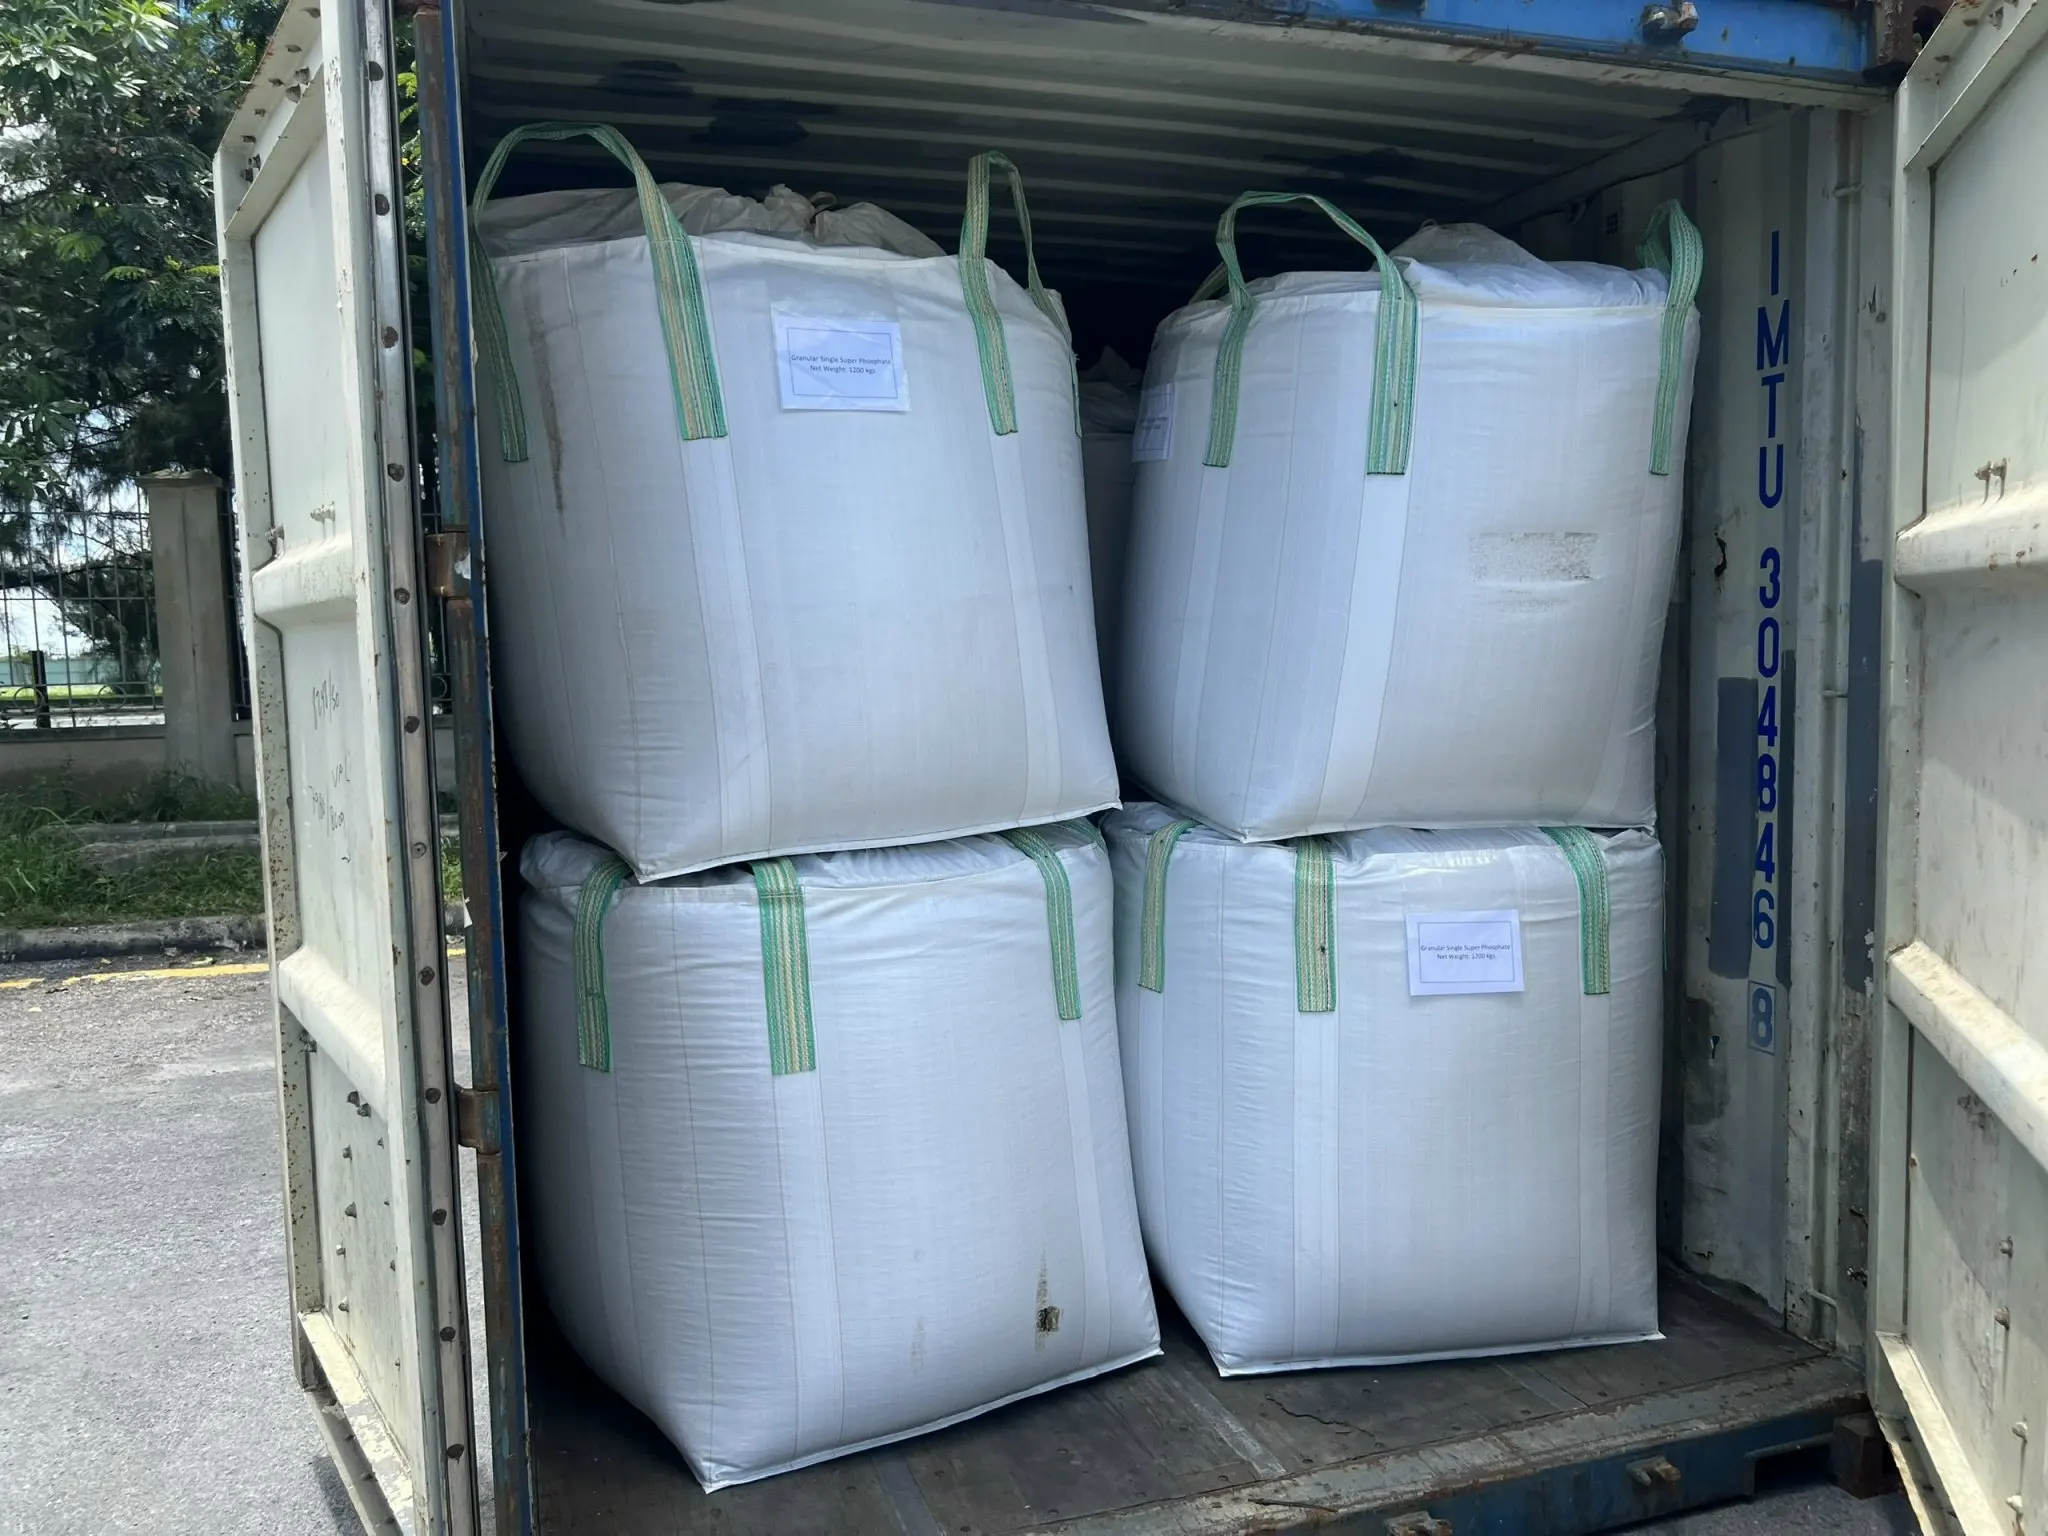 Granular Single Super Phosphate ( SSP ) - Highly water-soluble phosphorus fertilizer made in Vietnam